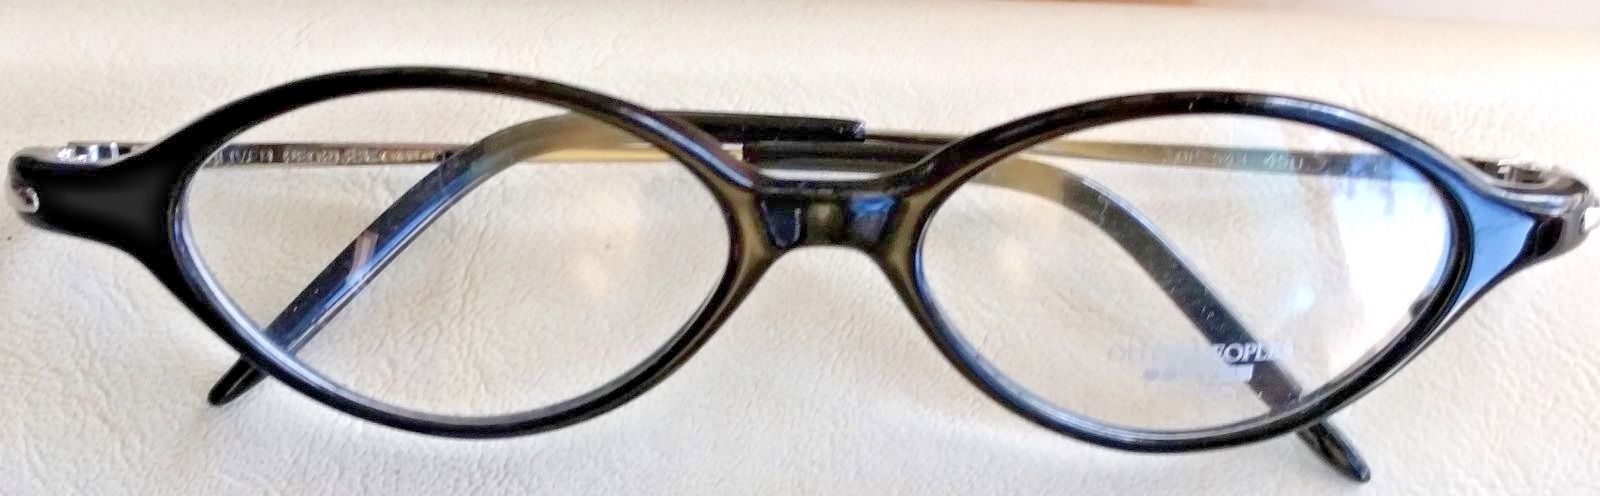 NOS OLIVER PEOPLES OP-543 Vintage Eyeglasses Frame Black 8K OP 543 Silver CASE - $70.00